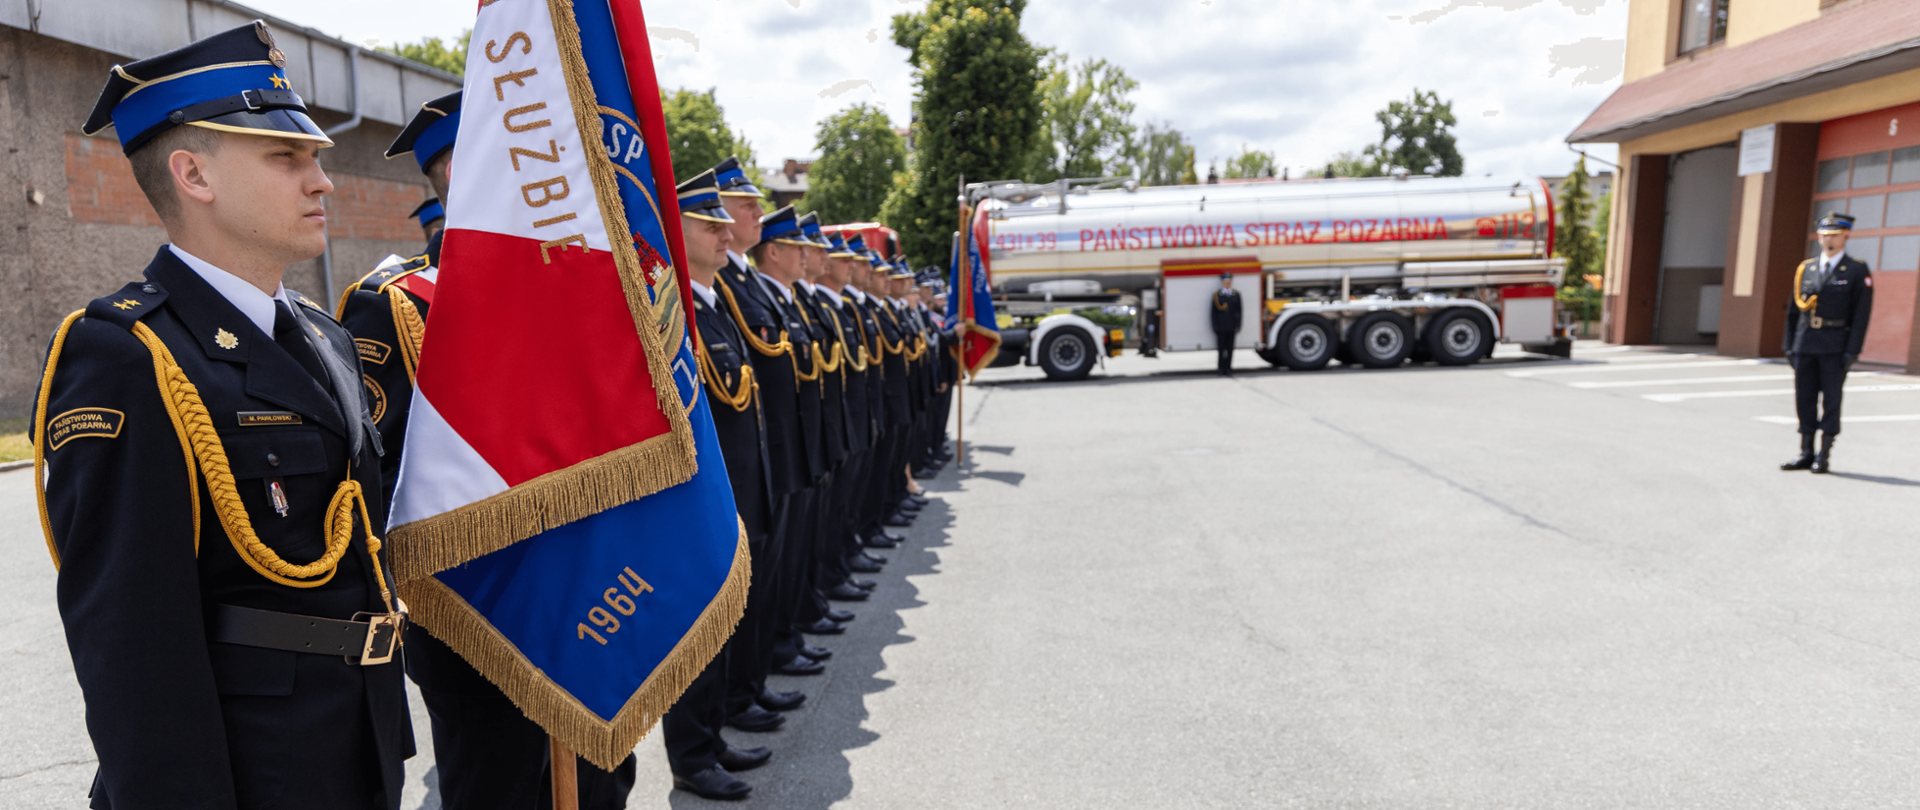 Na zdjęciu znajduje się grupa strażaków w mundurach galowych stojących w szeregu podczas uroczystości. Na pierwszym planie po lewej stronie widać strażaka trzymającego sztandar z czerwono-niebieskim płatem, na którym widnieją złote napisy oraz rok 1964. W tle znajduje się duży wóz strażacki z napisem „PAŃSTWOWA STRAŻ POŻARNA”. Uroczystość odbywa się na placu przed budynkiem strażackim, a w tle widać drzewa i fragment budynku z otwartymi bramami garażowymi. Na zdjęciu panuje pogodna, słoneczna aura.